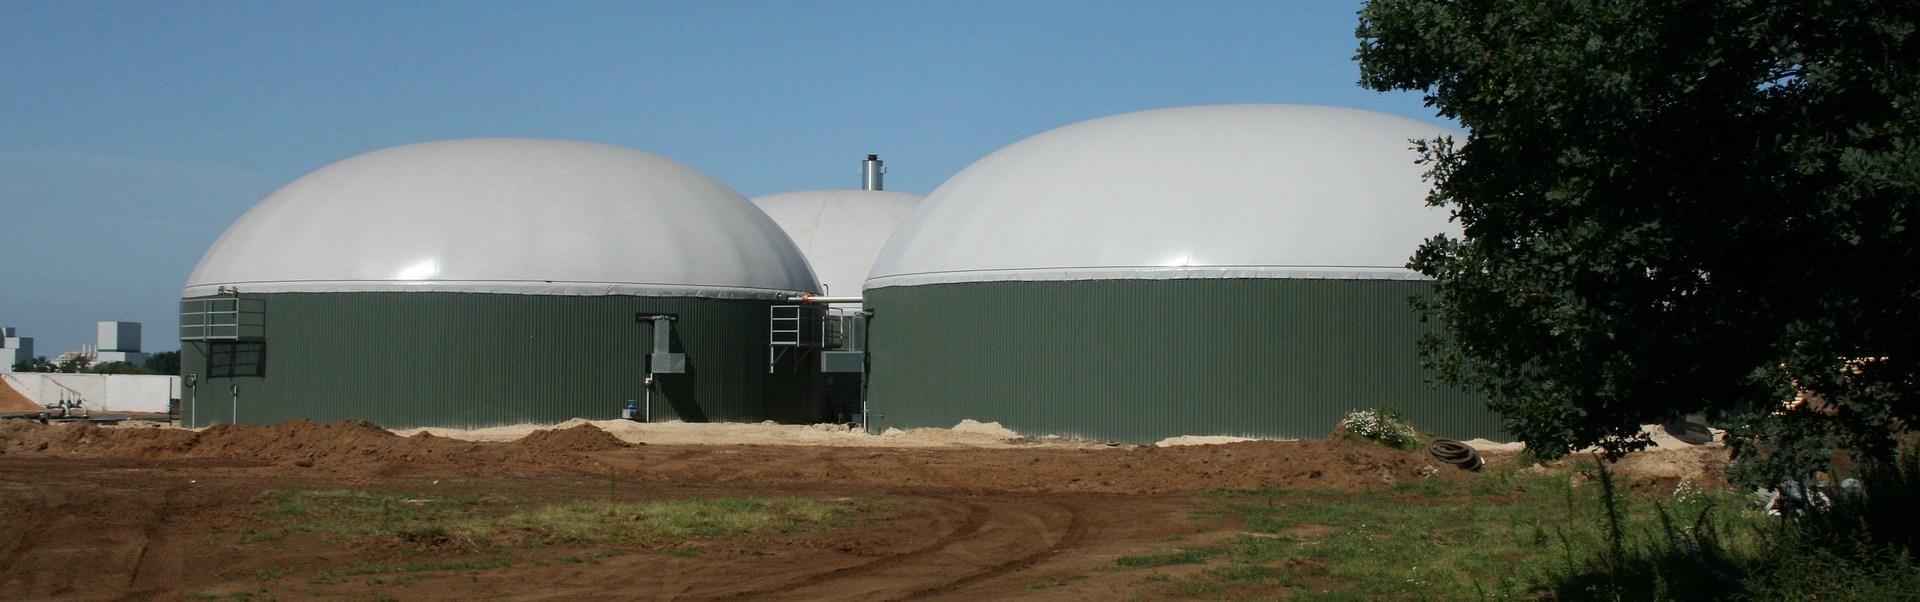 Erleichterungen für Biogasanlagen